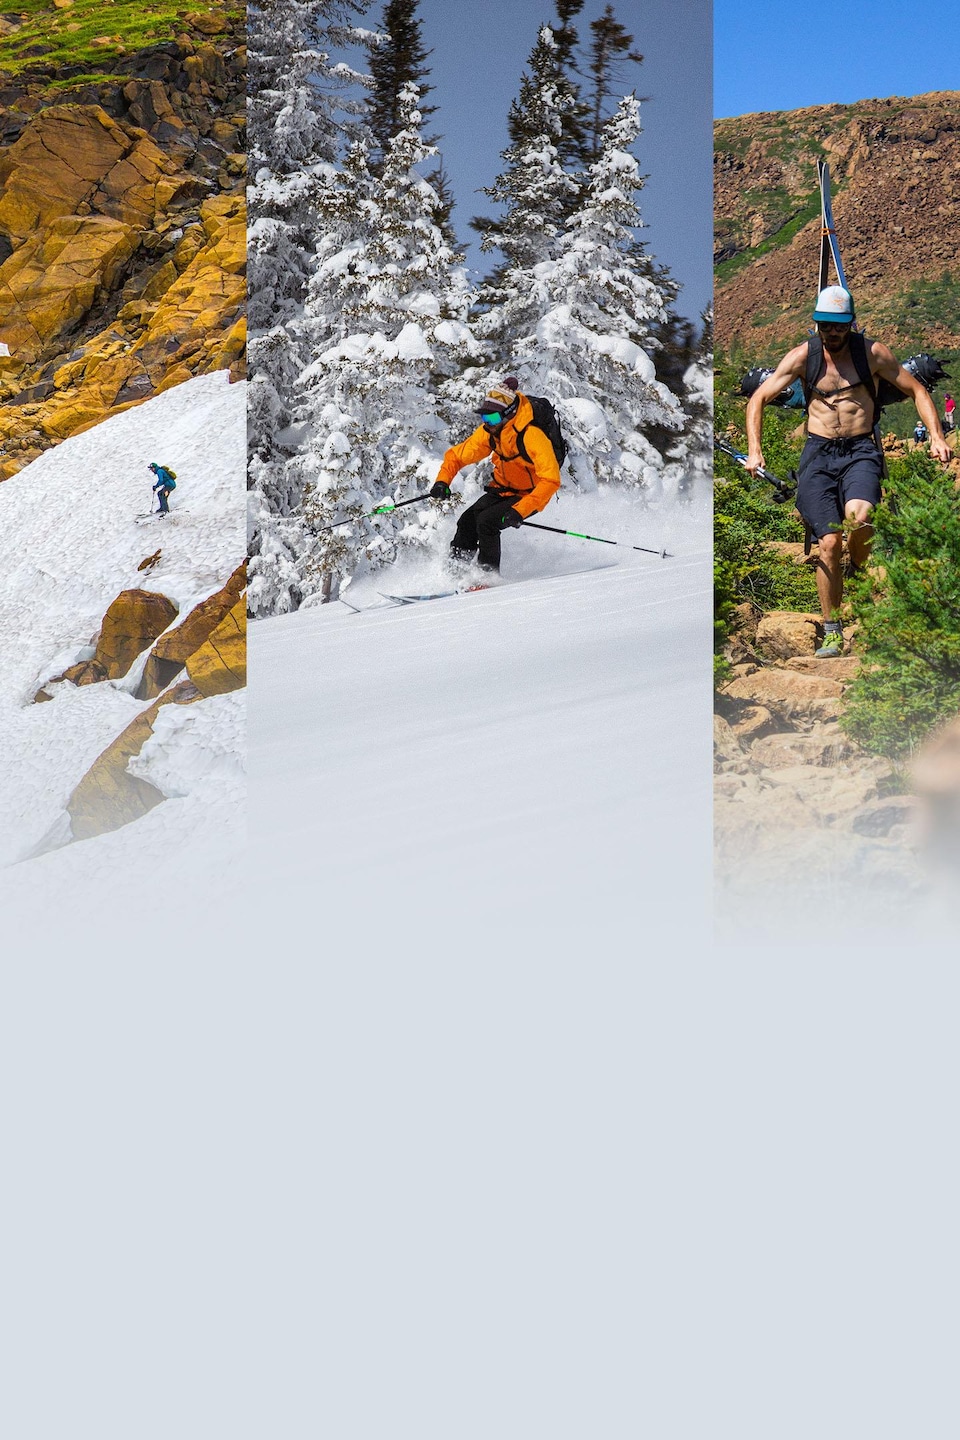 Été comme hiver, Félix Savard-Côté dévale les pentes et sensibilise les gens aux dangers du ski hors-piste.